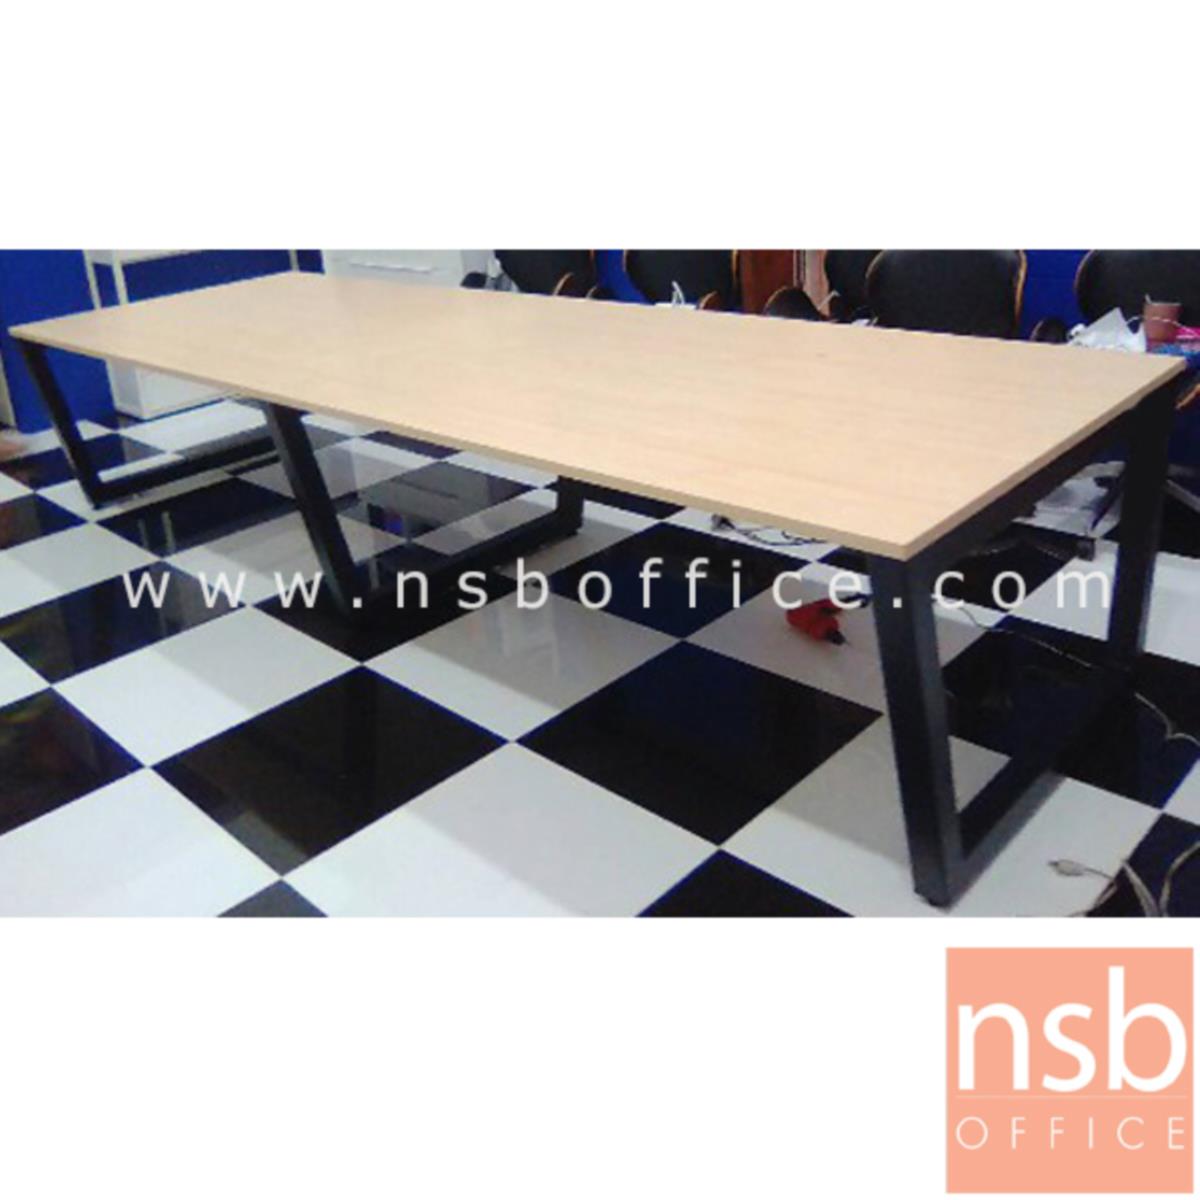 โต๊ะประชุมทรงสี่เหลี่ยม  ขนาด 200W, 240W, 300W, 360W, 400W cm.  ขาเหล็กทรงคางหมู